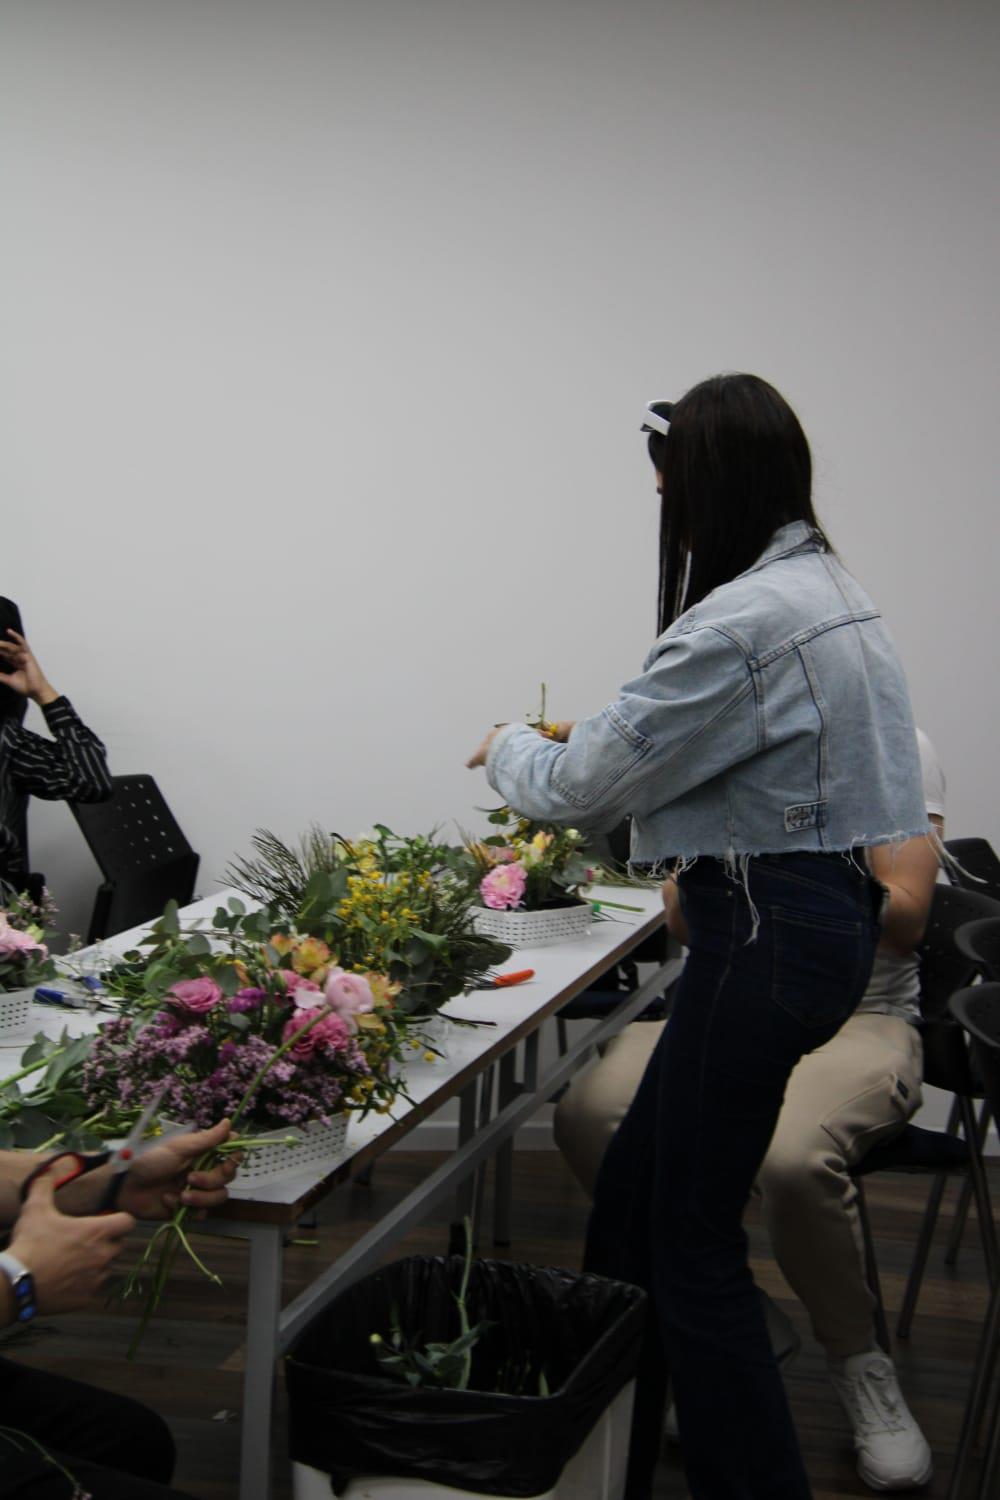 גלרייה - שיעור עיצוב ושזירת פרחים בקורס ניהול עיצוב והפקת אירועים מחזור 33, 20 מתוך 22